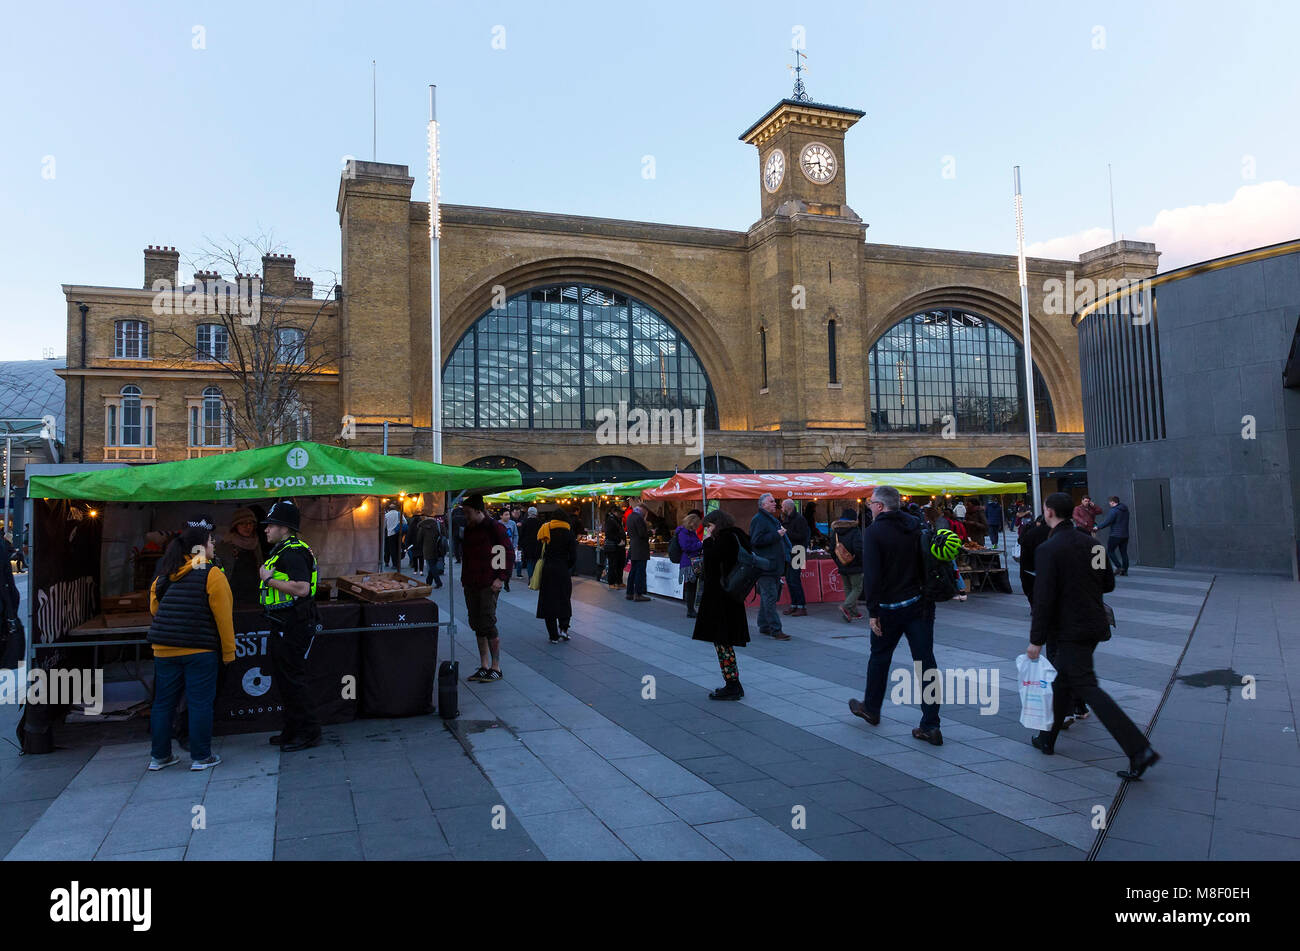 Londres, UK - 7 mars, 2018 : vue générale de l'alimentation du marché en dehors de King's Cross station. Le marché en plein air est situé à King's Cross Banque D'Images